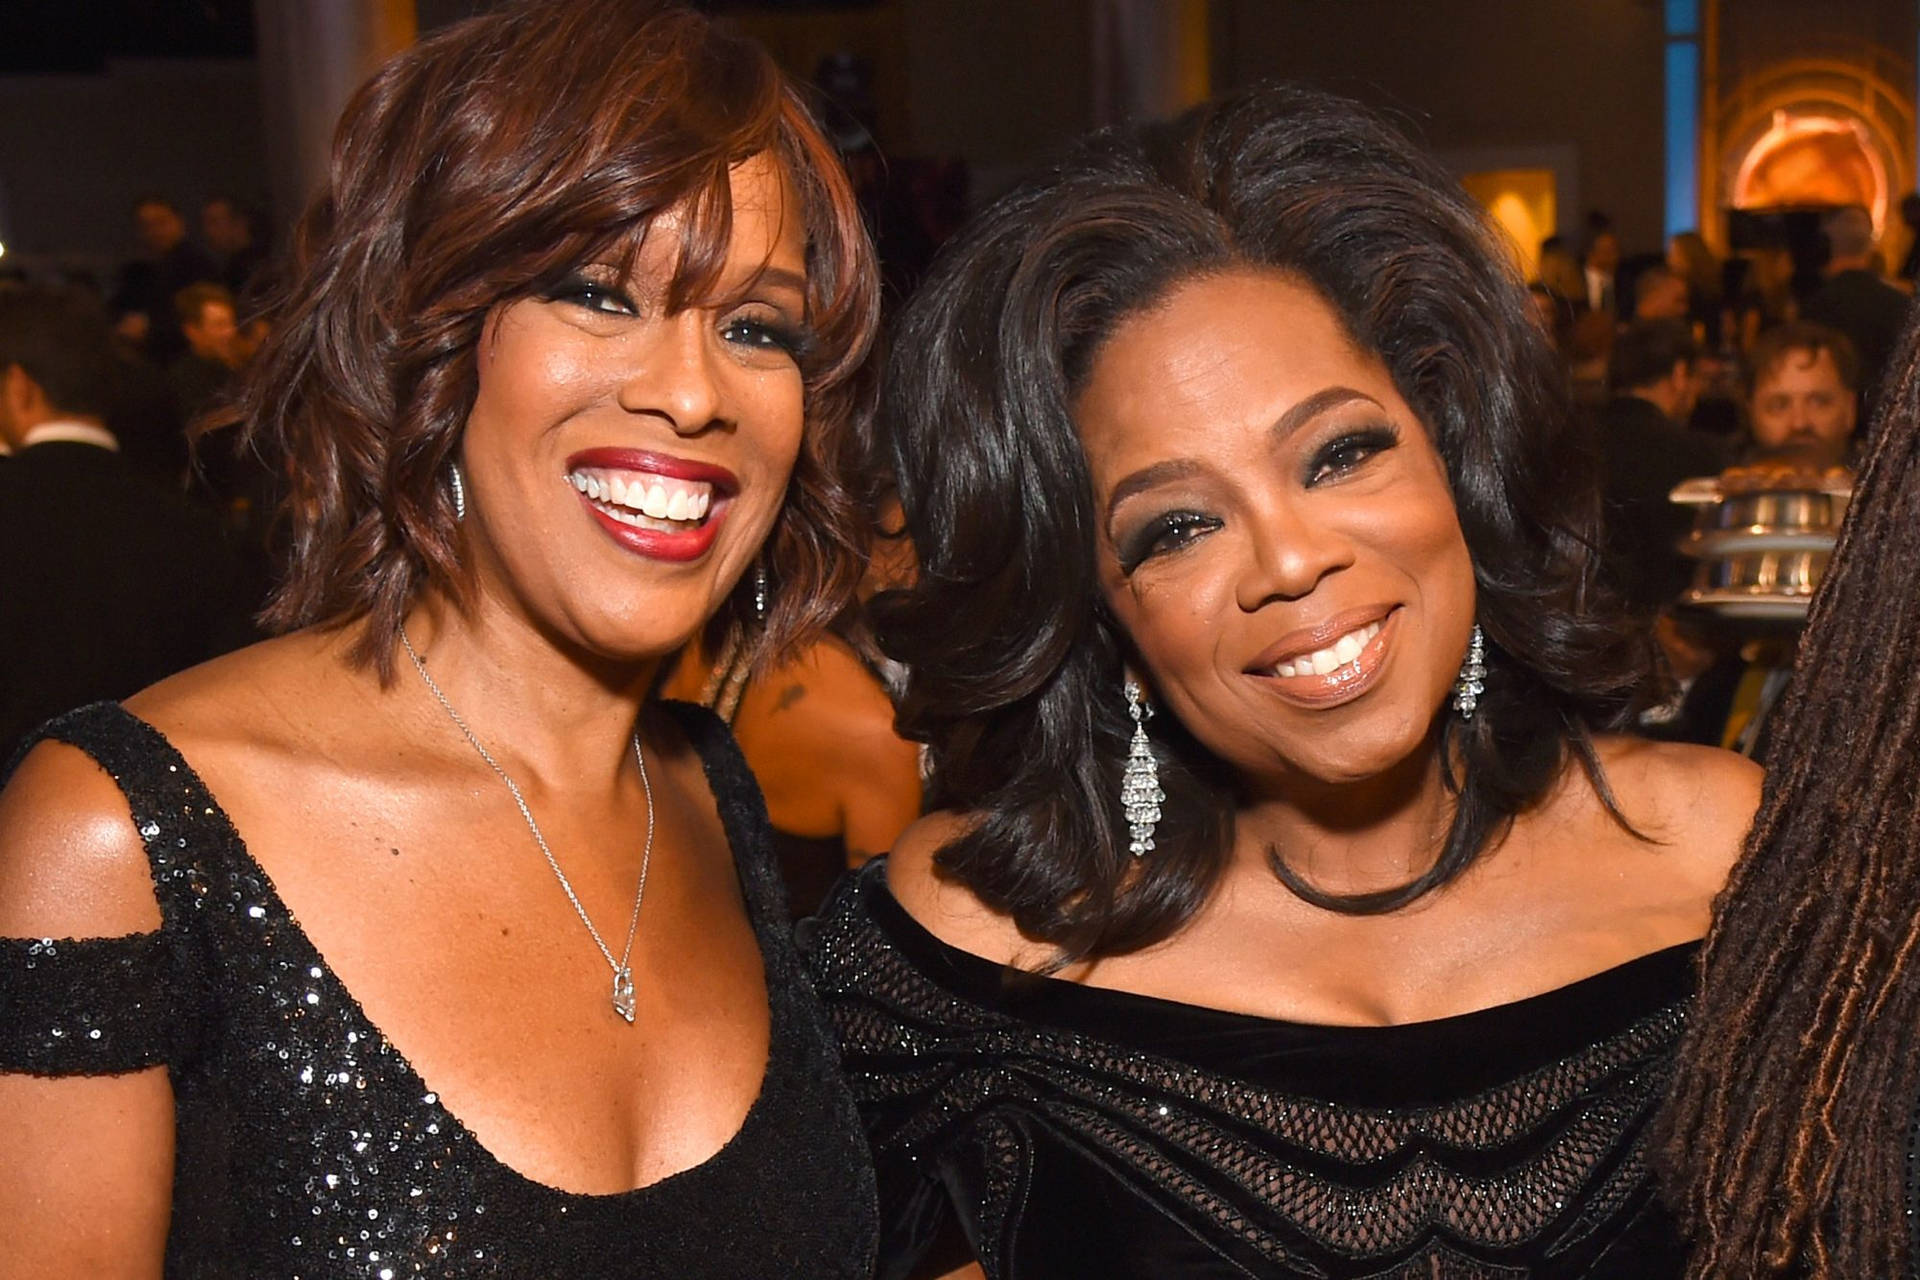 Oprah Winfrey With Her Friend Background